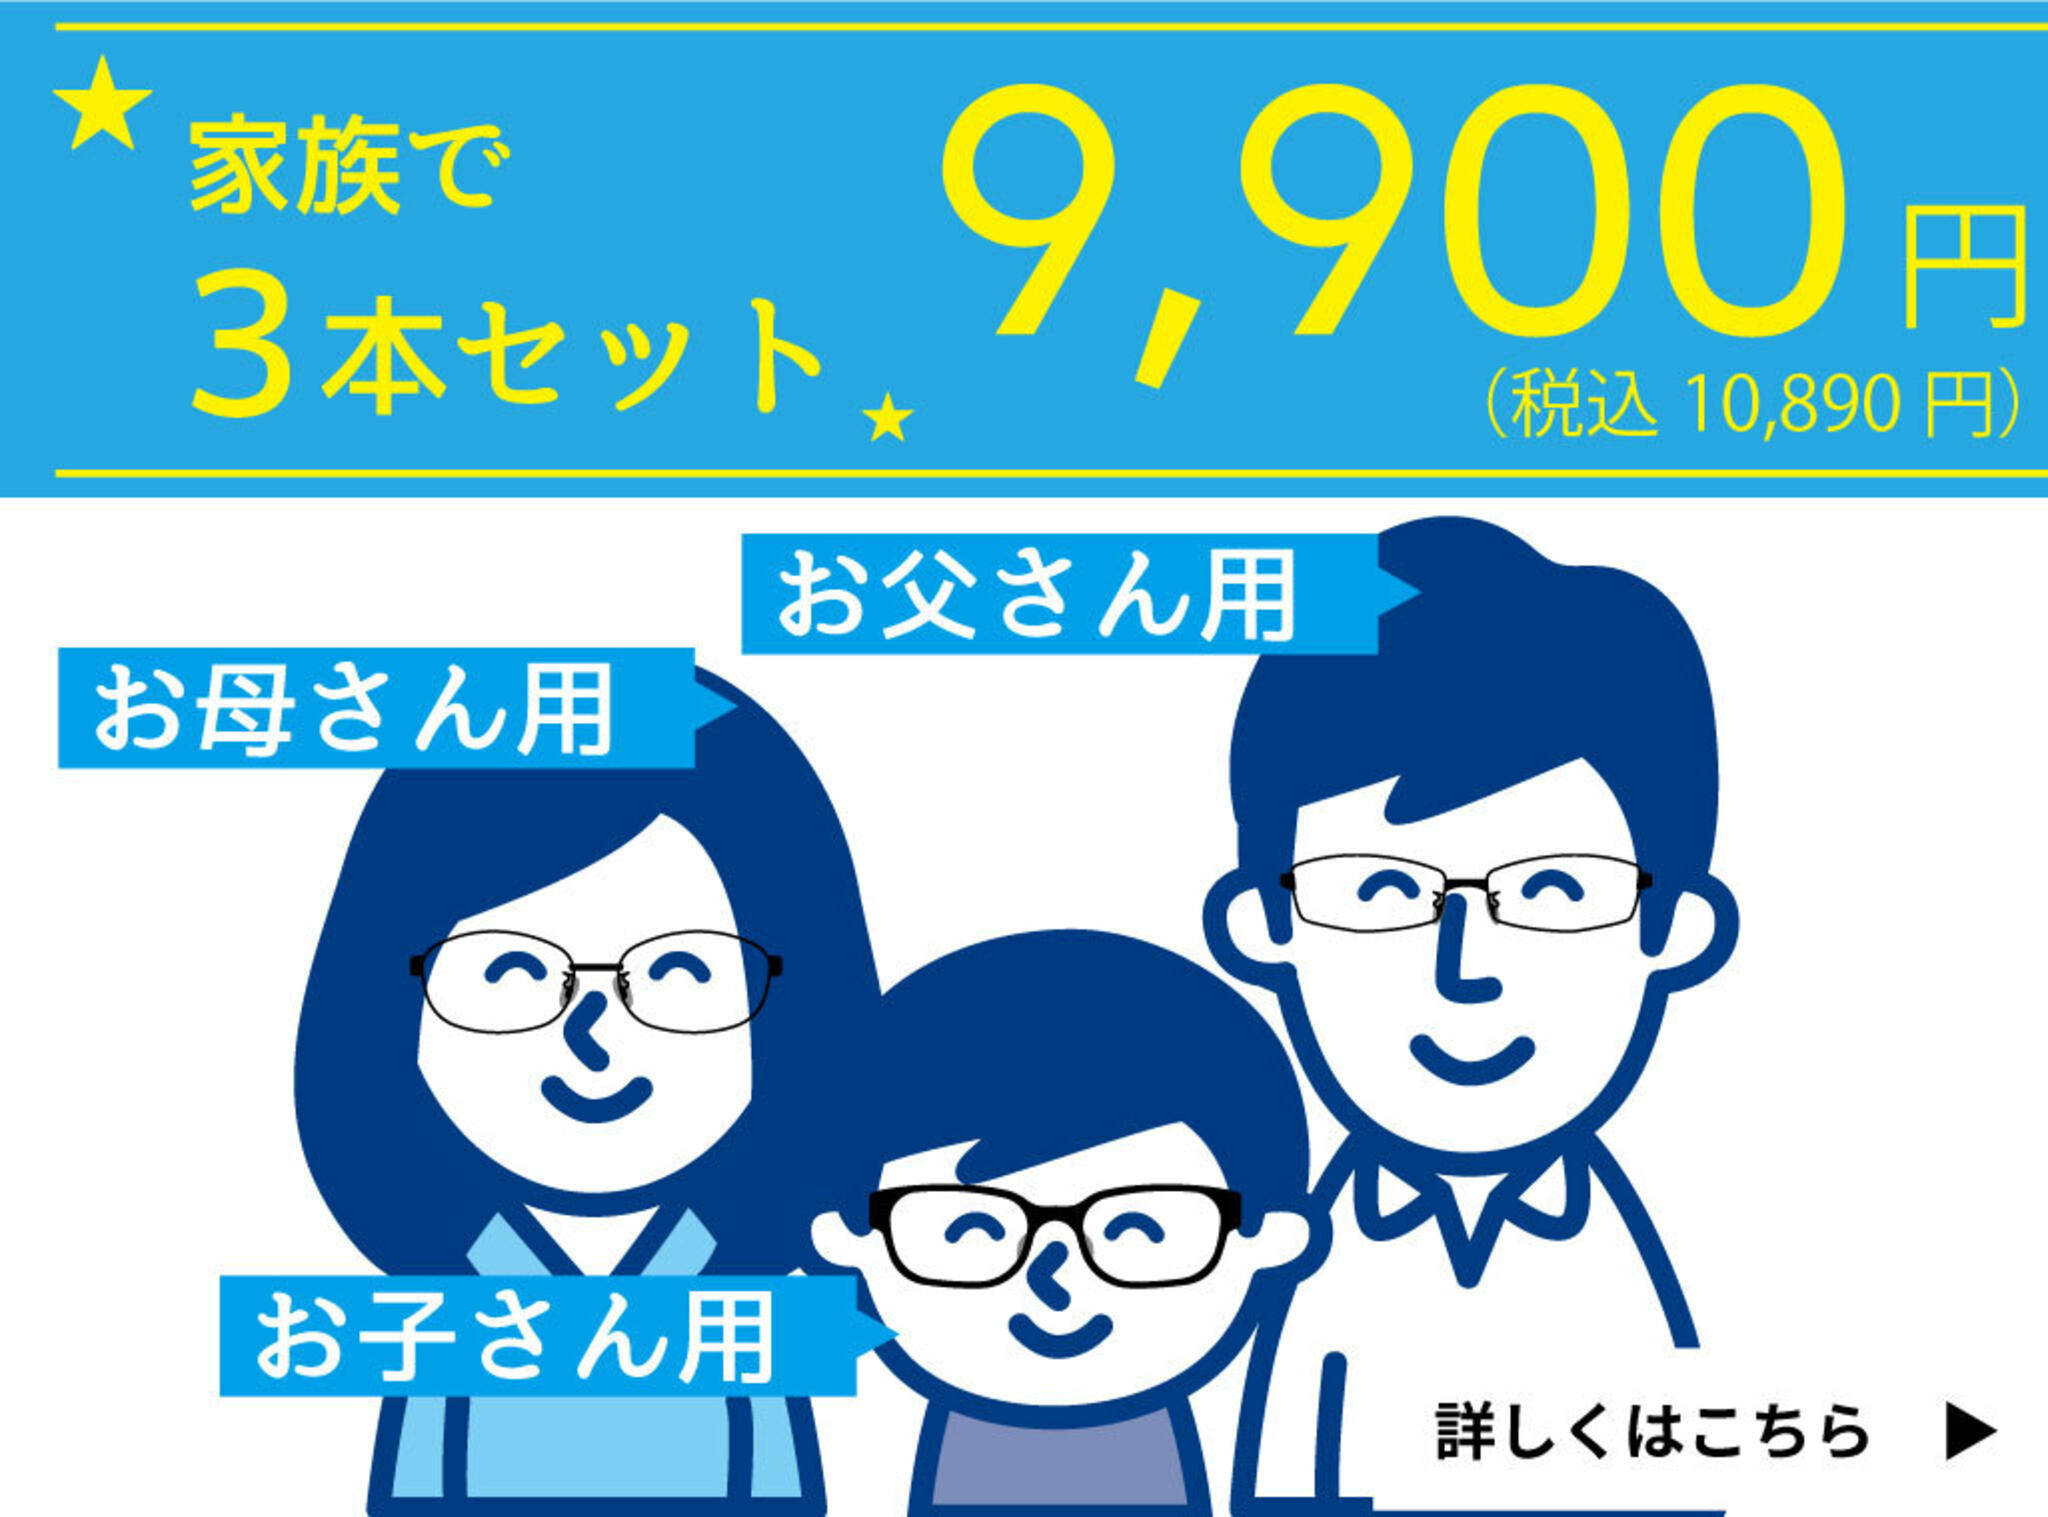 ドクターアイズ江別店からのお知らせ(家族で買えるメガネ3本セット )に関する写真